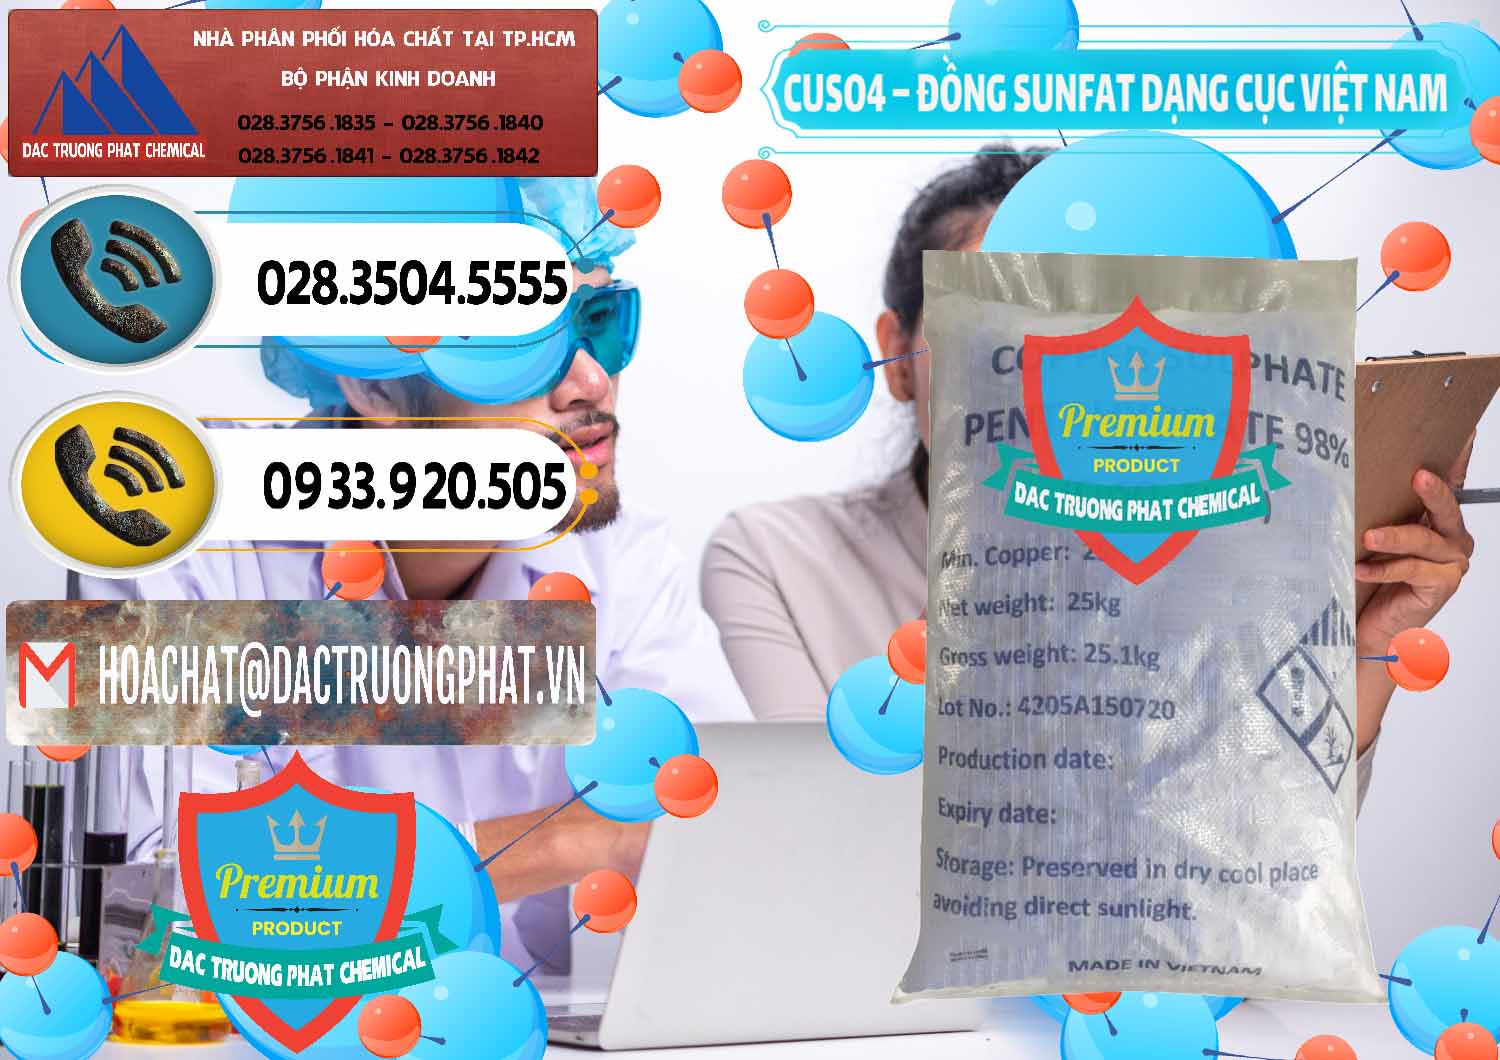 Nơi chuyên cung cấp & bán CUSO4 – Đồng Sunfat Dạng Cục Việt Nam - 0303 - Kinh doanh & phân phối hóa chất tại TP.HCM - hoachatdetnhuom.vn